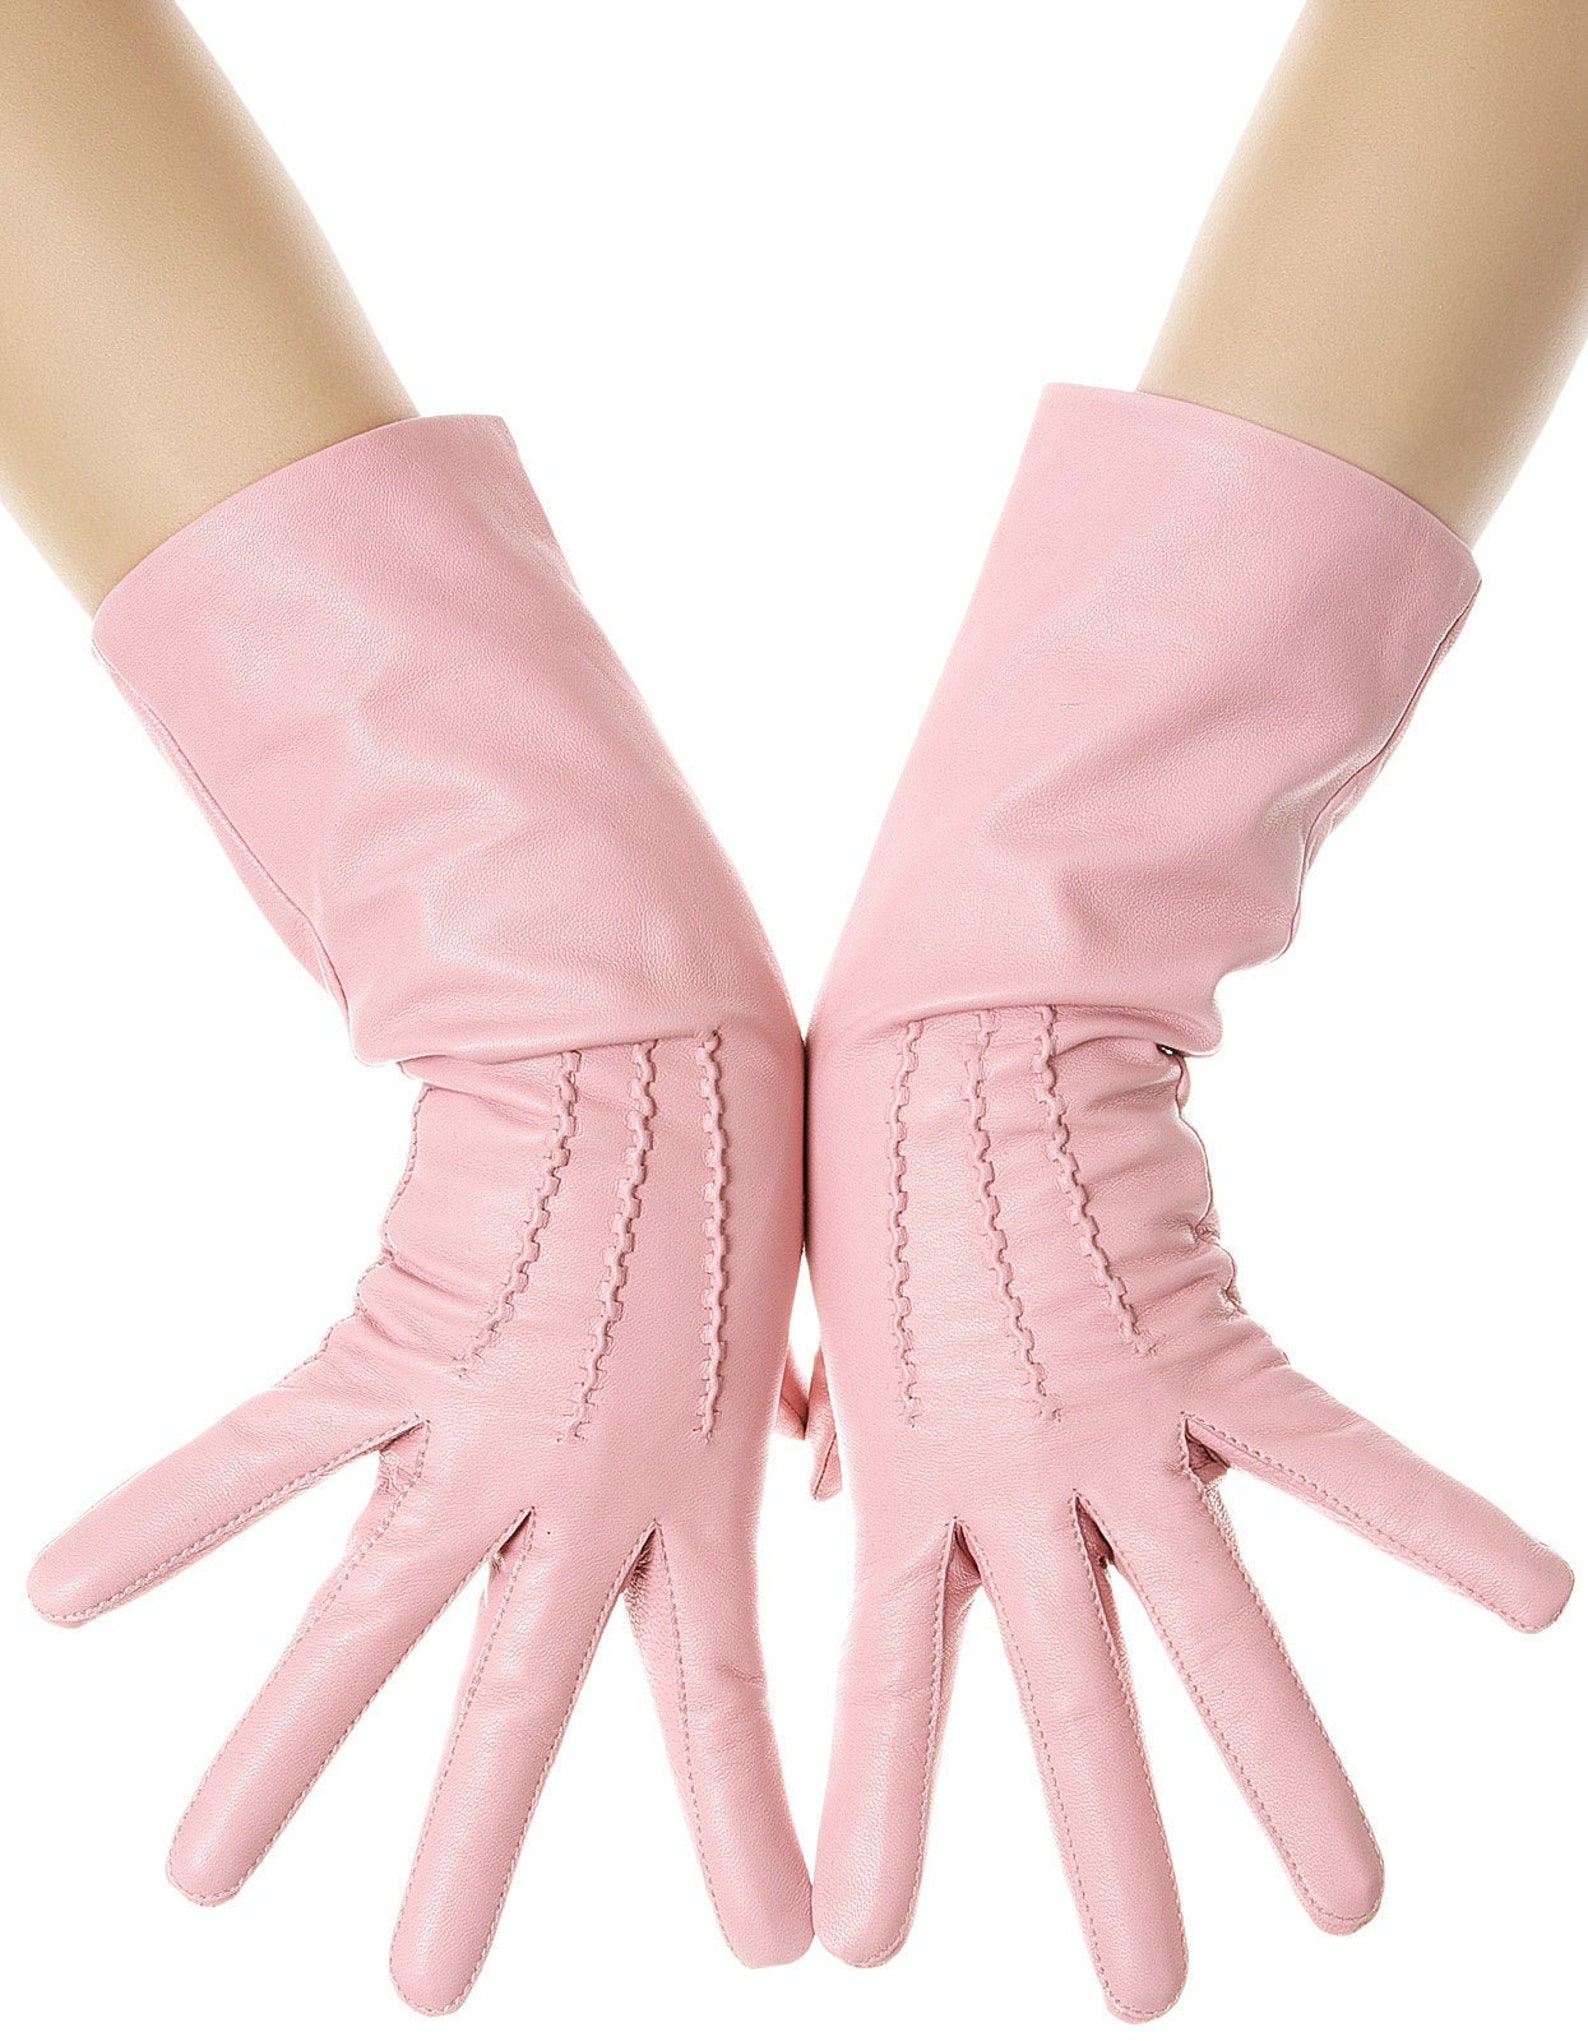 Купить розовые перчатки. Розовые кожаные перчатки. Розовые перчатки женские. Розовые кожаные перчатки женские. Перчатки тканевые розовые.